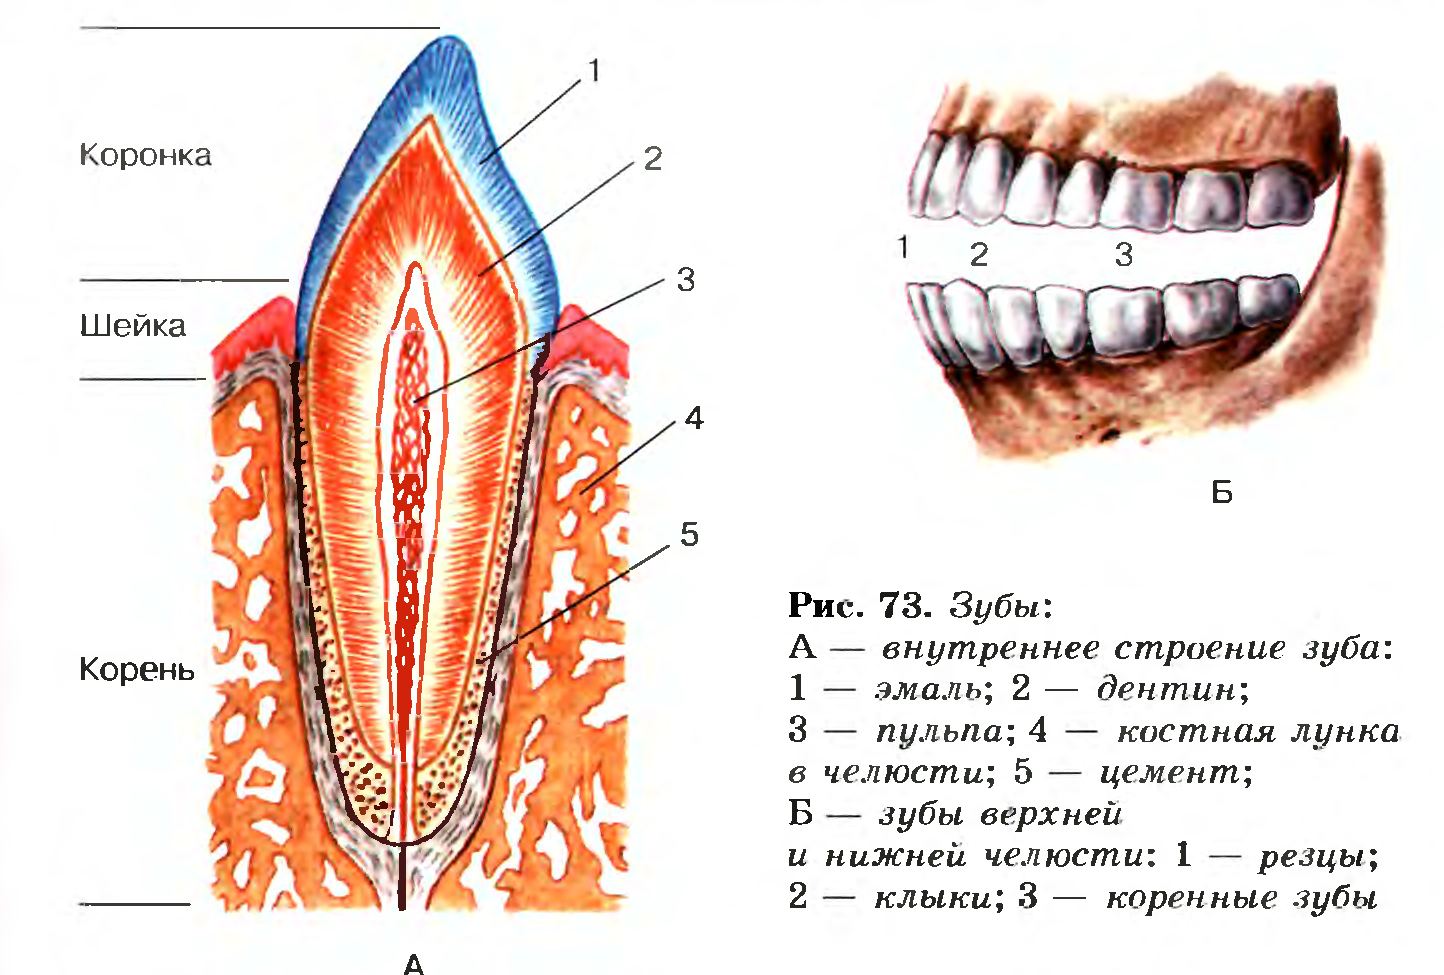 Сосуды десны. Зубы: резцы, клыки, коренные зубы.. Строение зуба биология 8 класс биология. Строение зуба человека челюсть анатомия. Схема анатомического строения зуба.